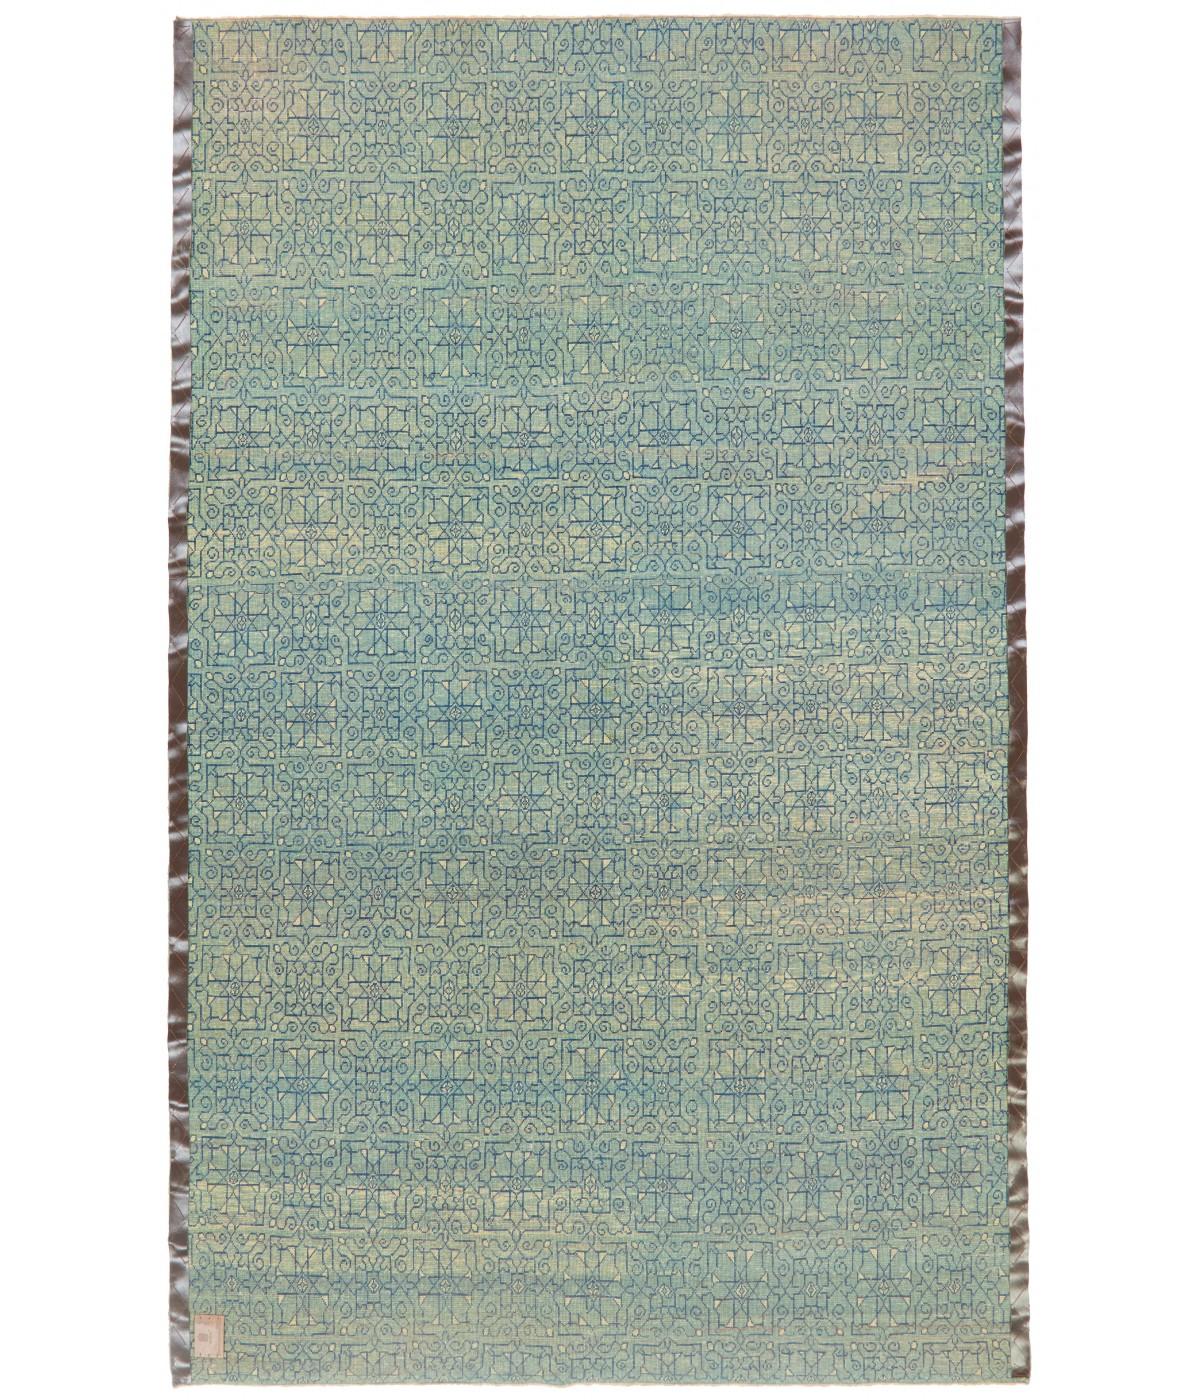 Die Quelle des Teppichs stammt aus dem Besitz von Endre Unger, der 1992 bei Sotheby's verkauft wurde. Dieser Teppich mit dem zentralen Stern wurde im frühen 16. Jahrhundert von einem Mamluken-Sultan in Kairo, Ägypten, entworfen. Das interpretierte